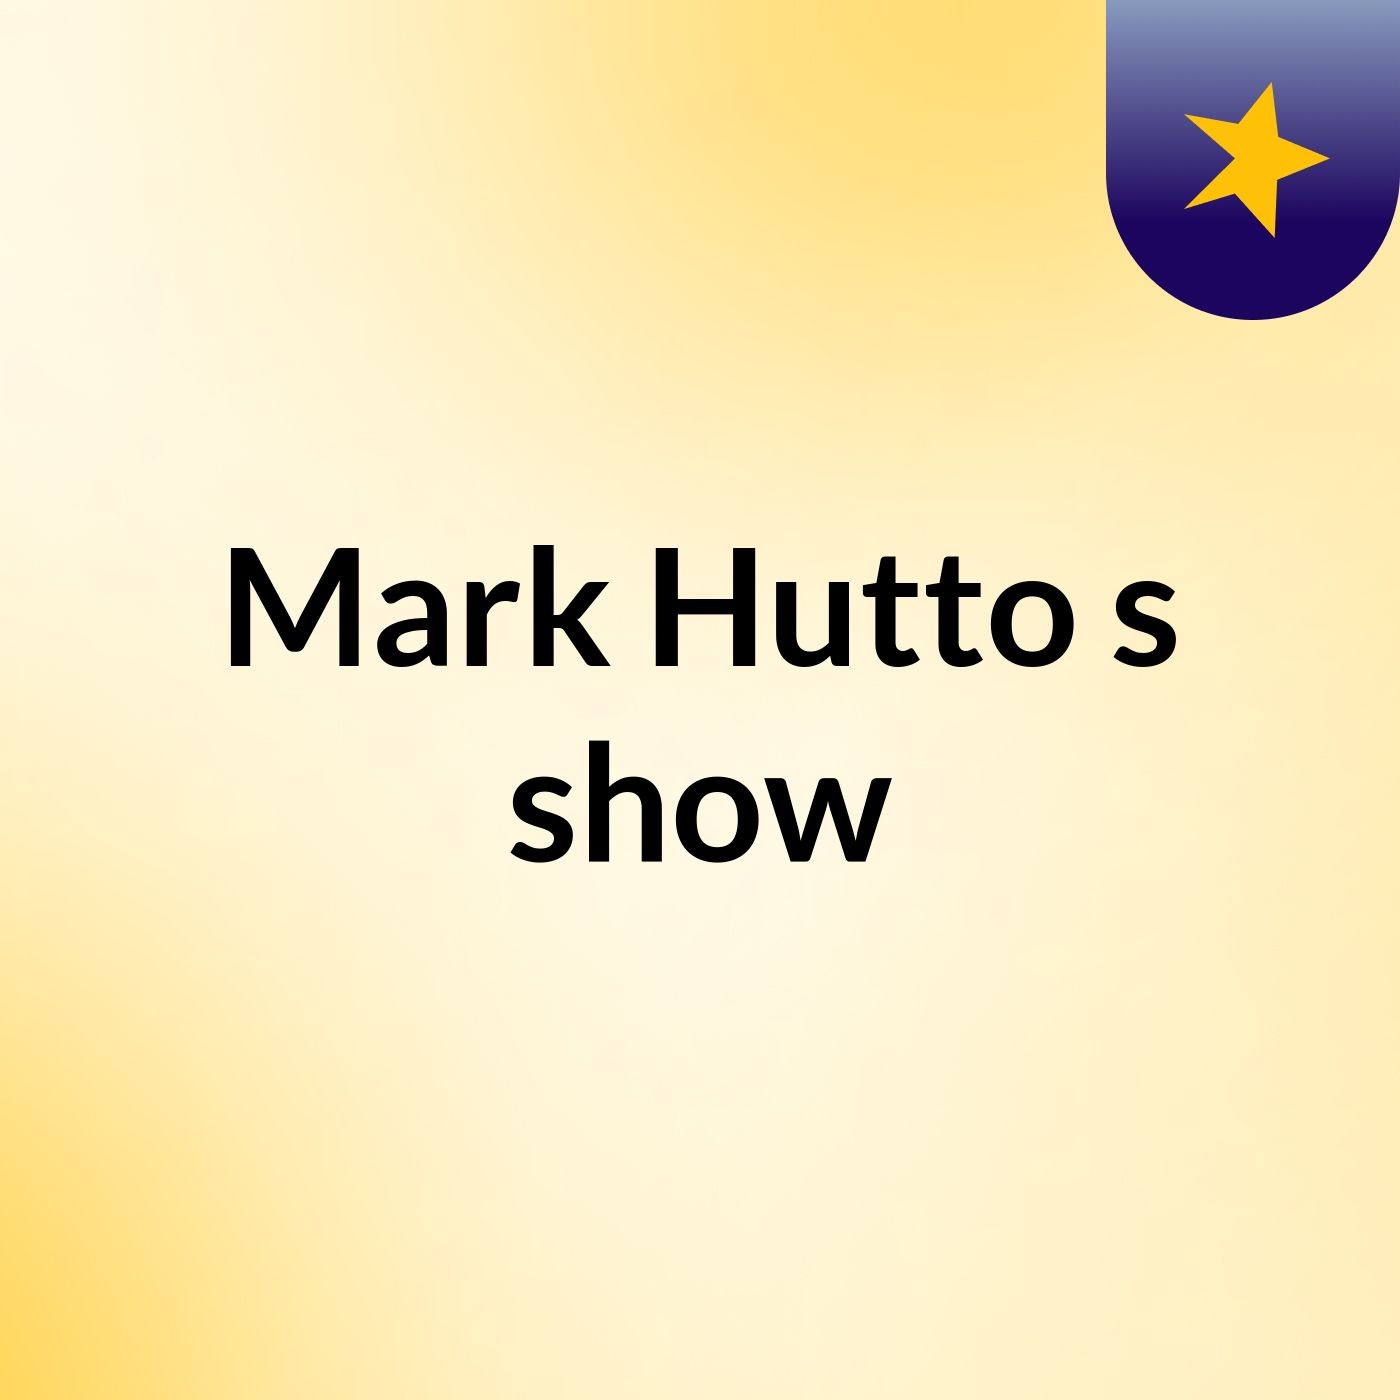 Mark Hutto's show